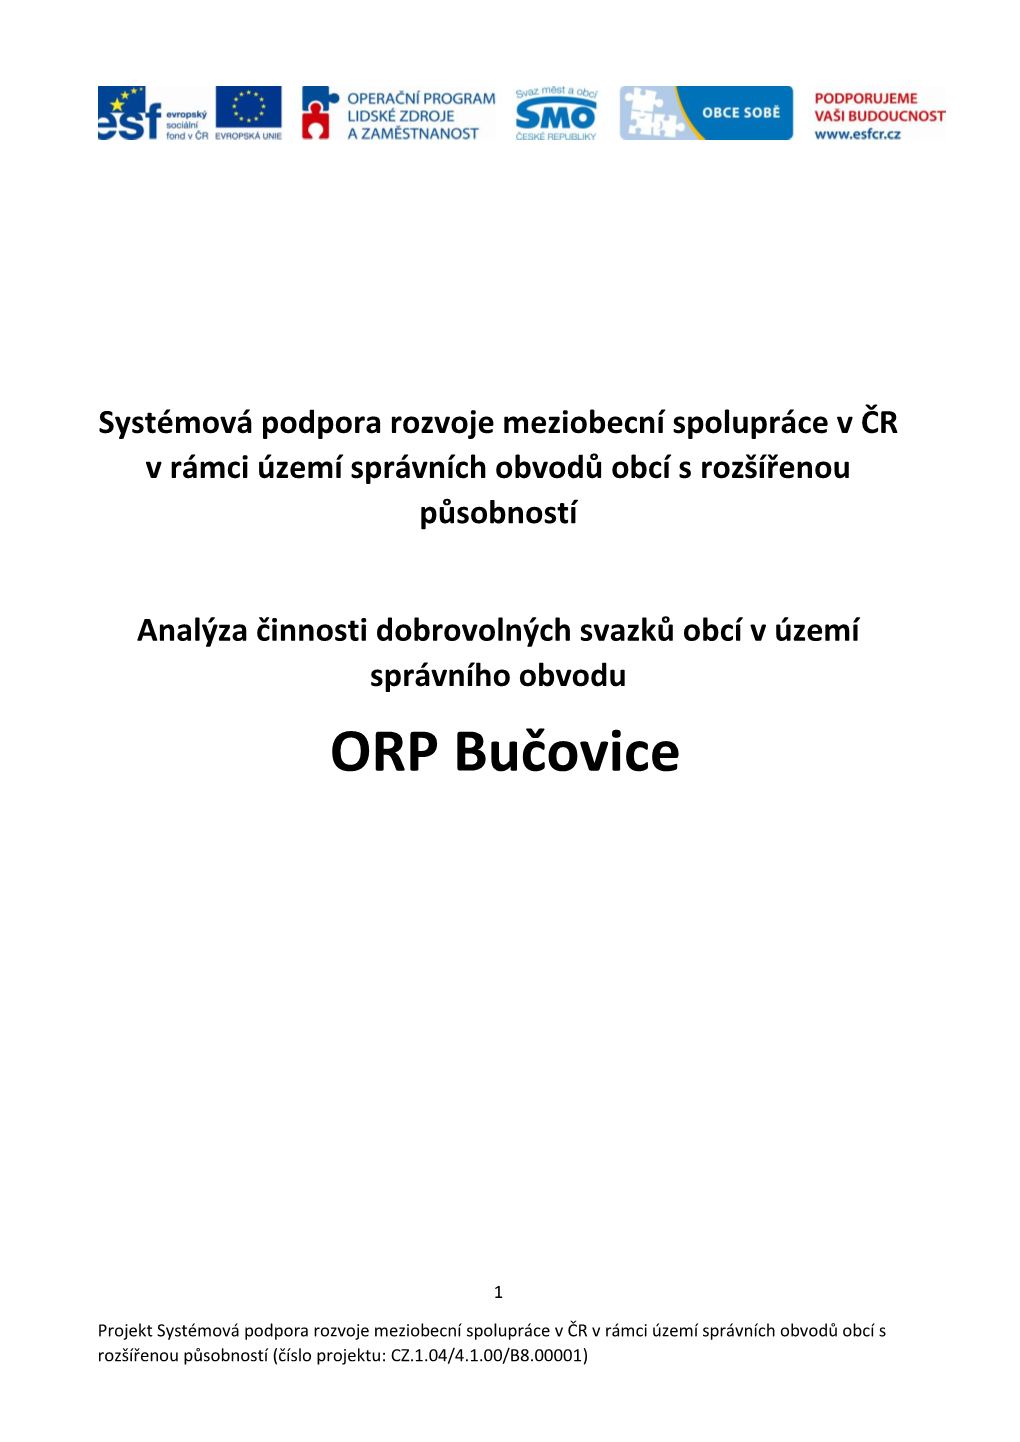 ORP Bučovice